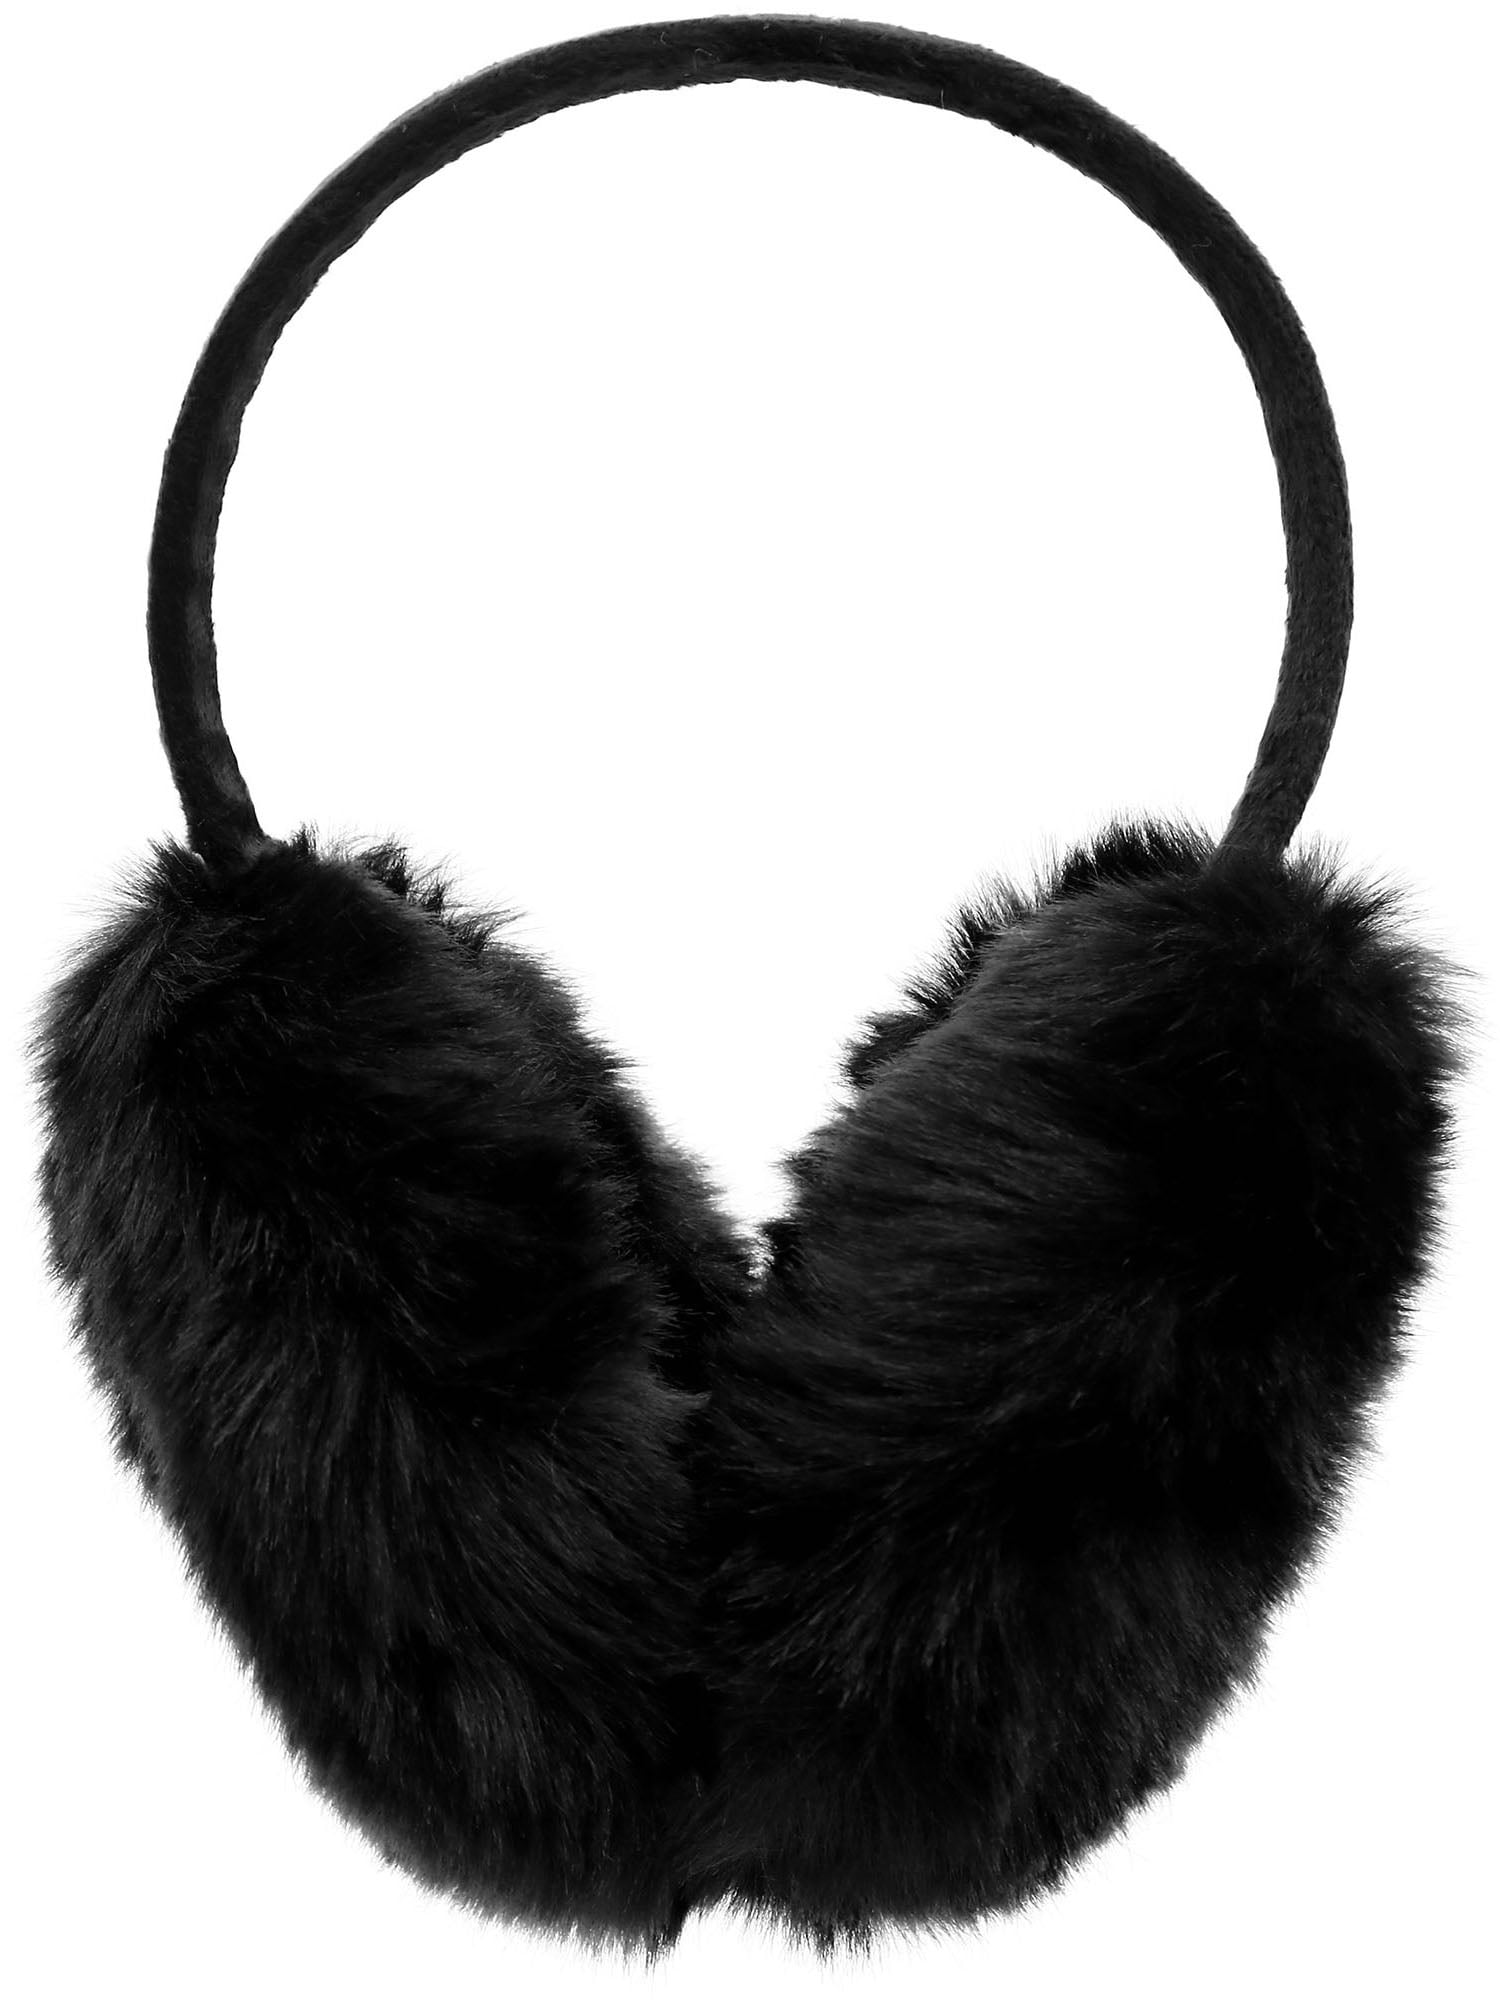 HUIHE Foldable Earmuffs,Womens Girls Winter Warm Faux Fur Plush Ear Warmers 